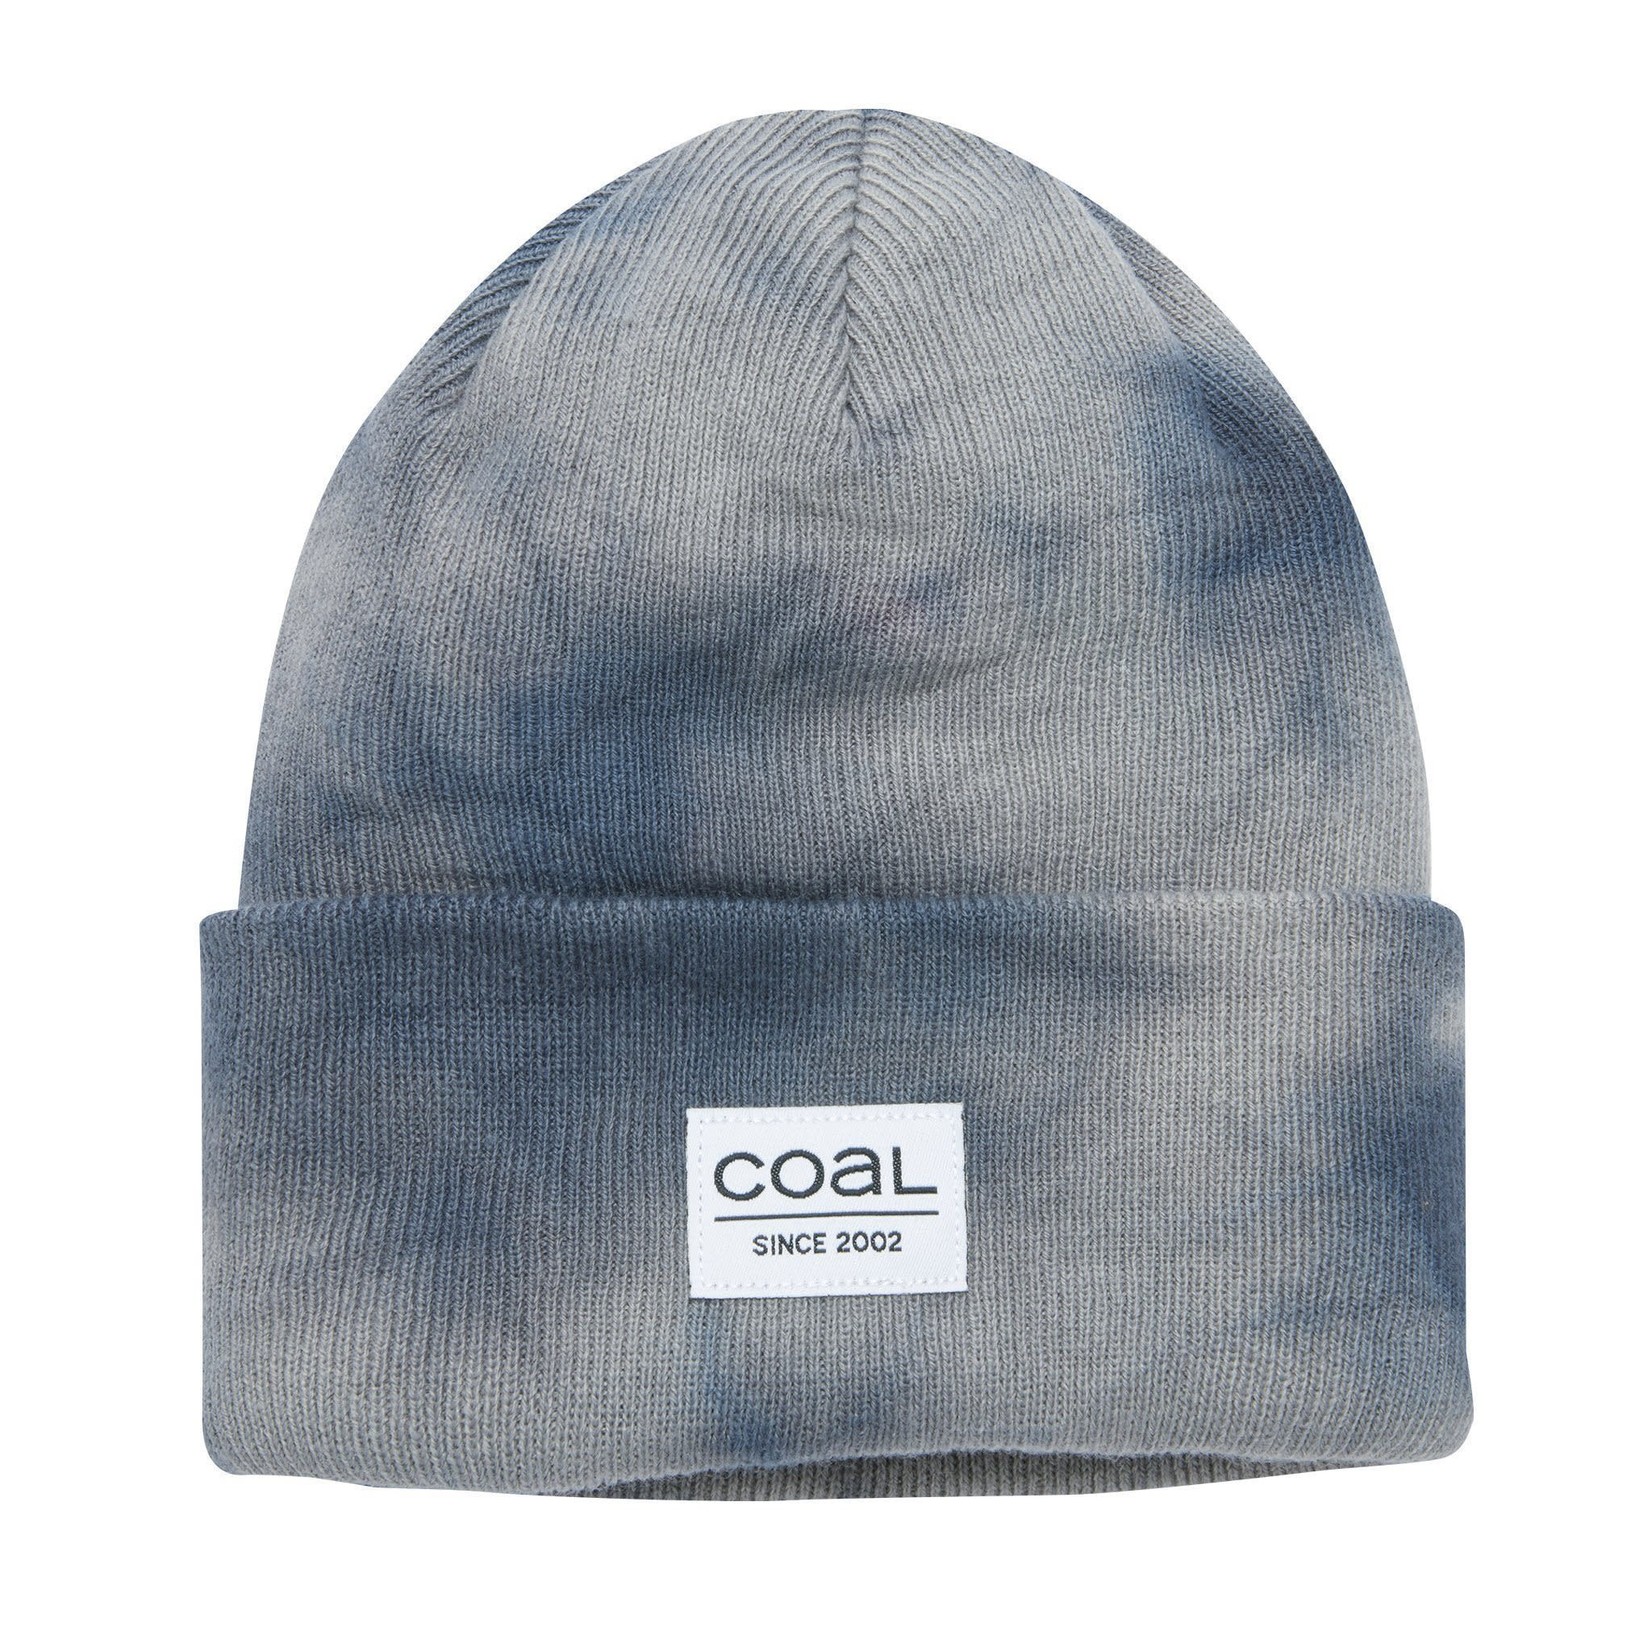 Coal Headwear Coal Standard Beanie - Grey Tie Dye